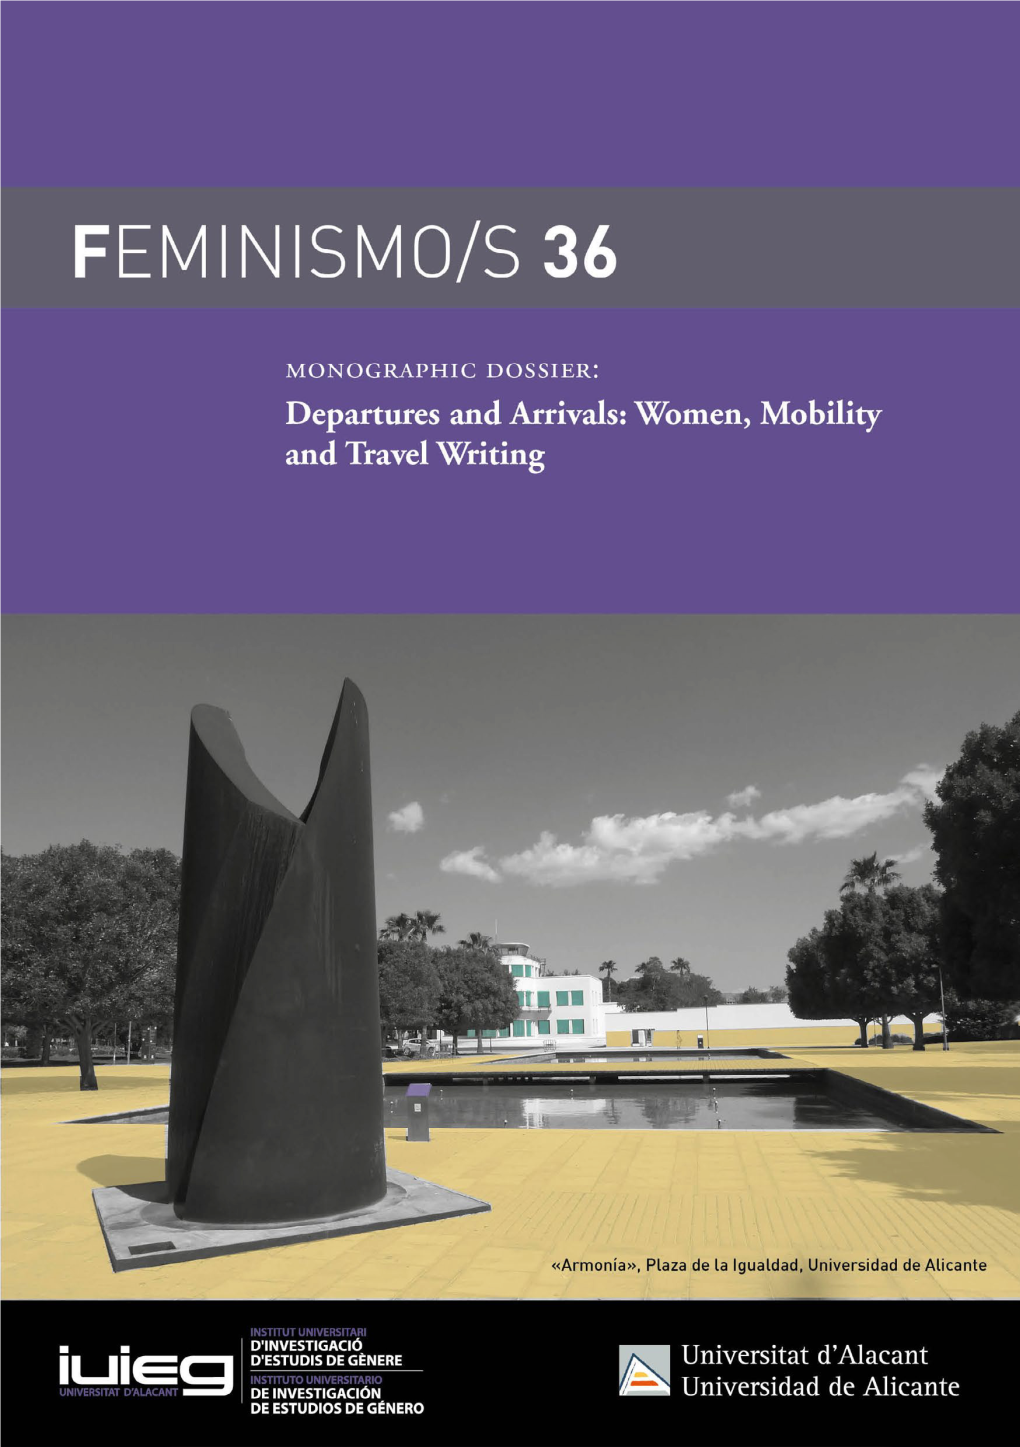 Feminismo/S 36, December 2020, 13-21 ISSN: 1989-9998